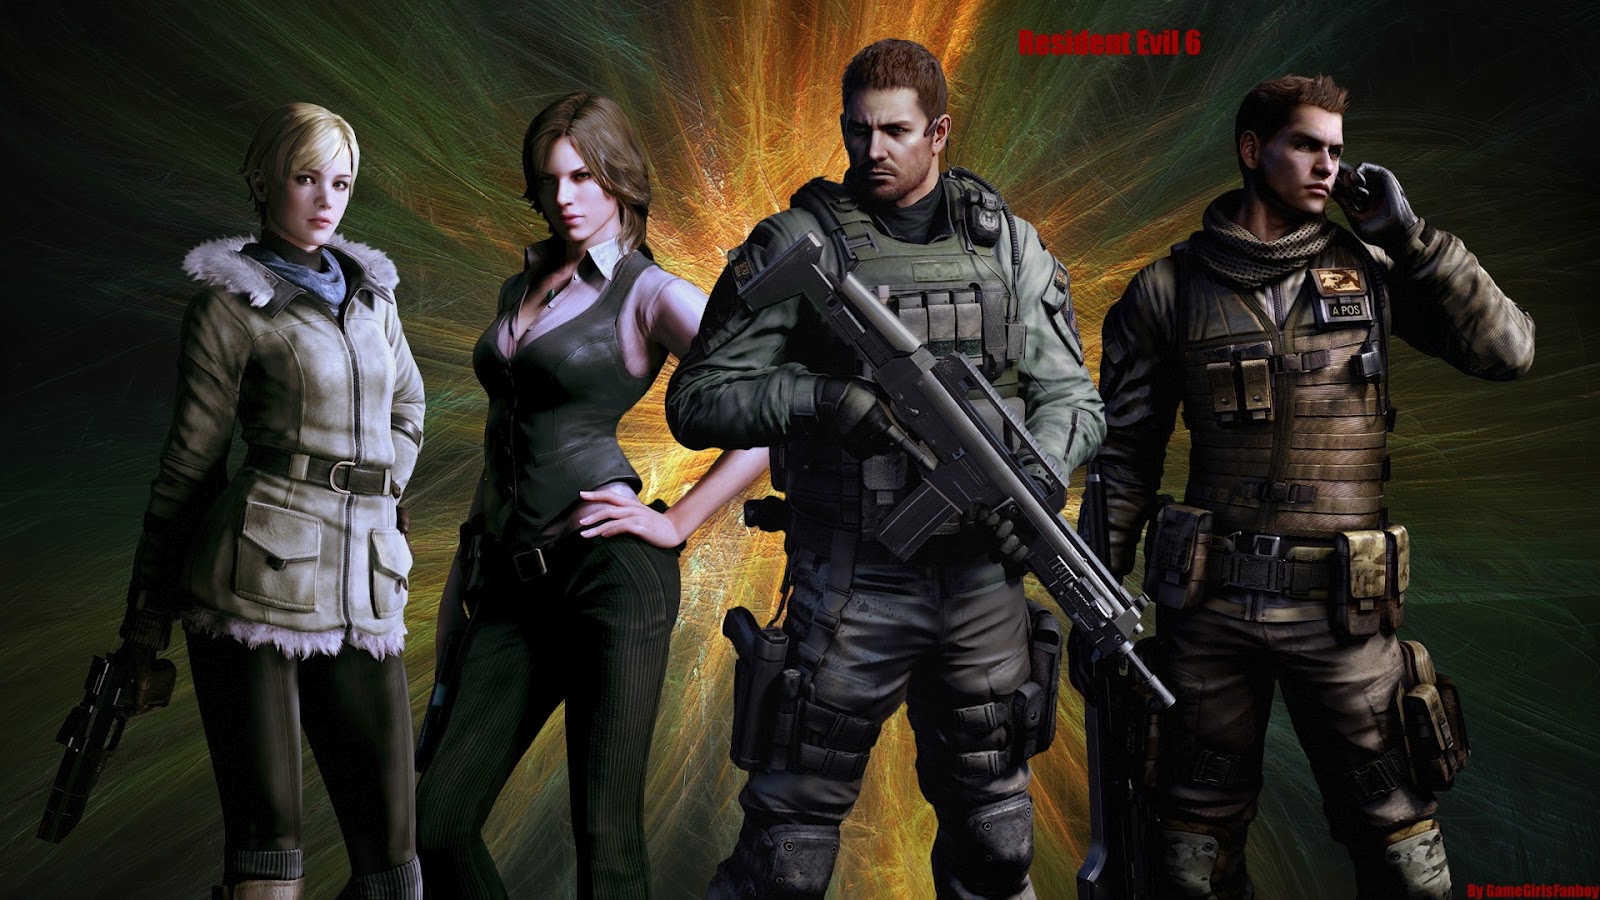 Oscarschair Resident Evil Wallpaper 1080p